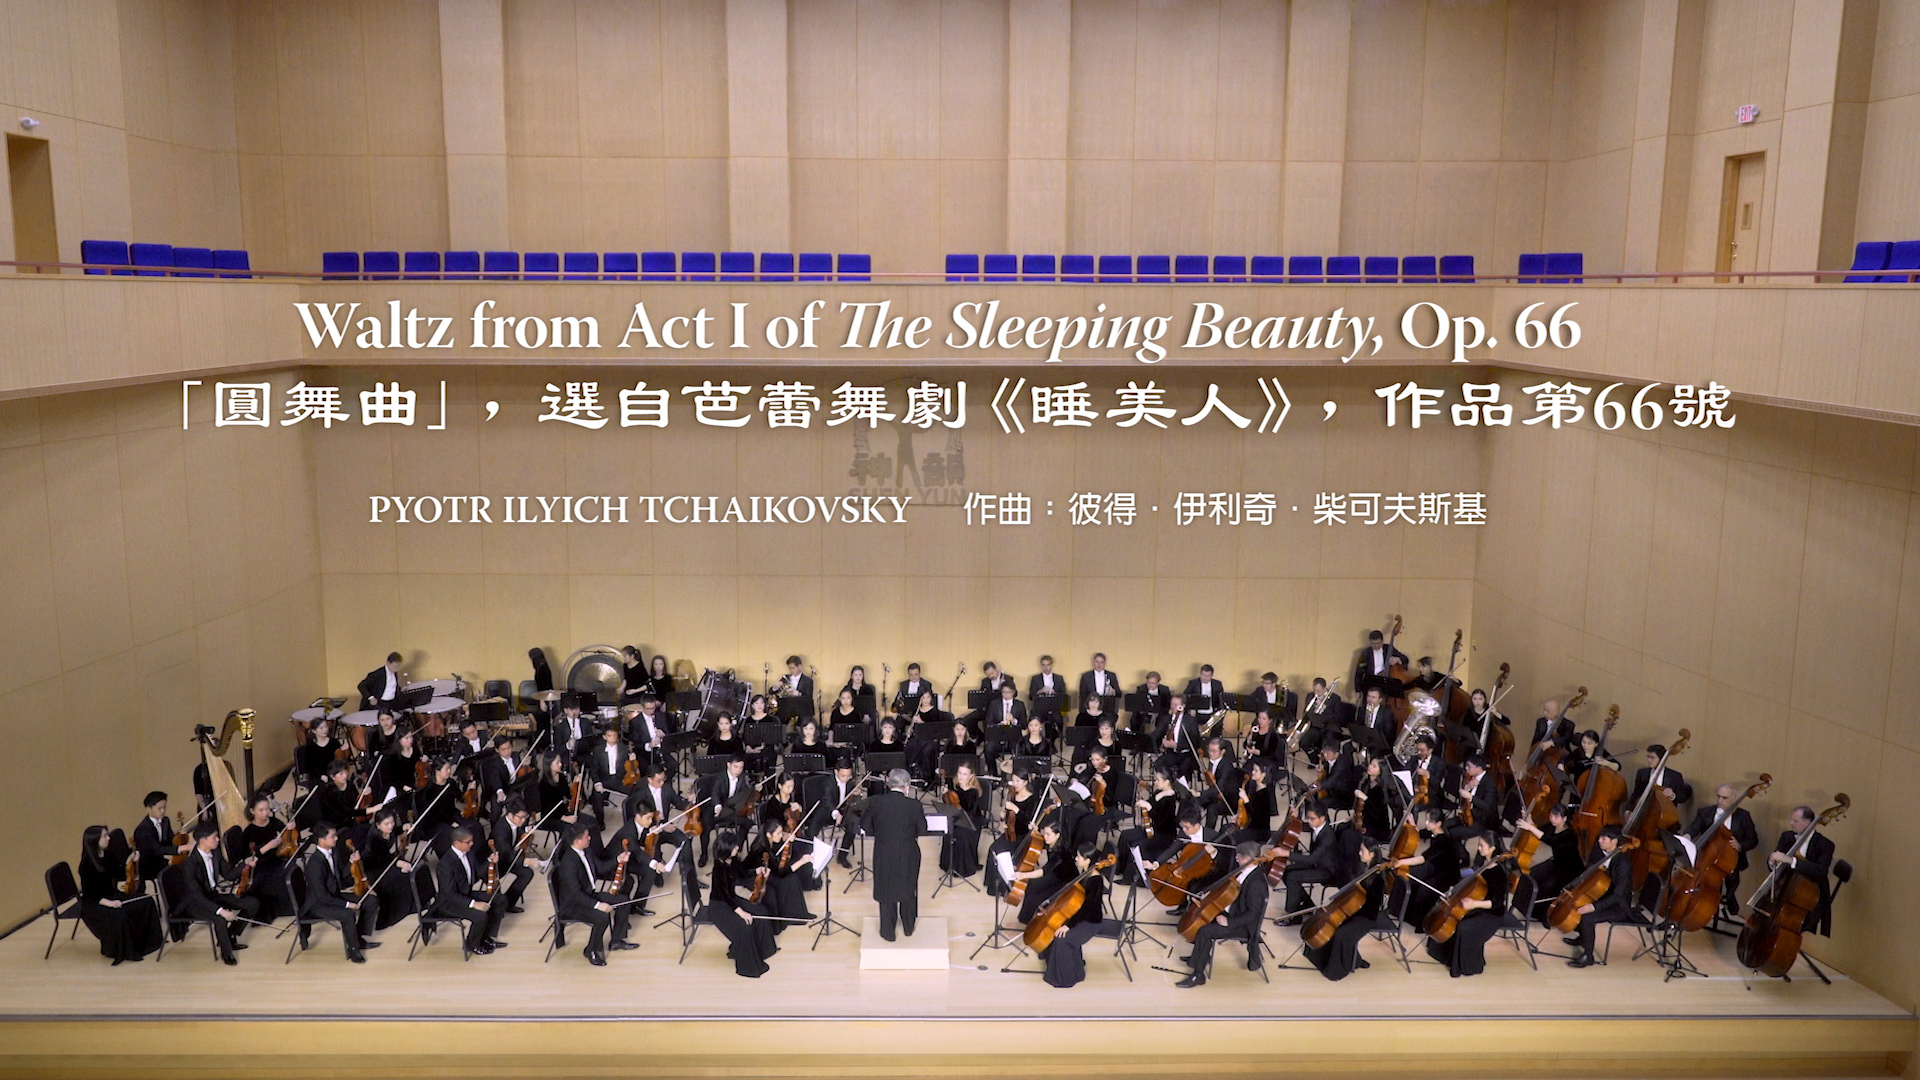 Tchaikovsky: Điệu Waltz trích từ Hồi I vở Người đẹp ngủ trong rừng, Op. 66 – Dàn nhạc Giao hưởng Shen Yun 2018